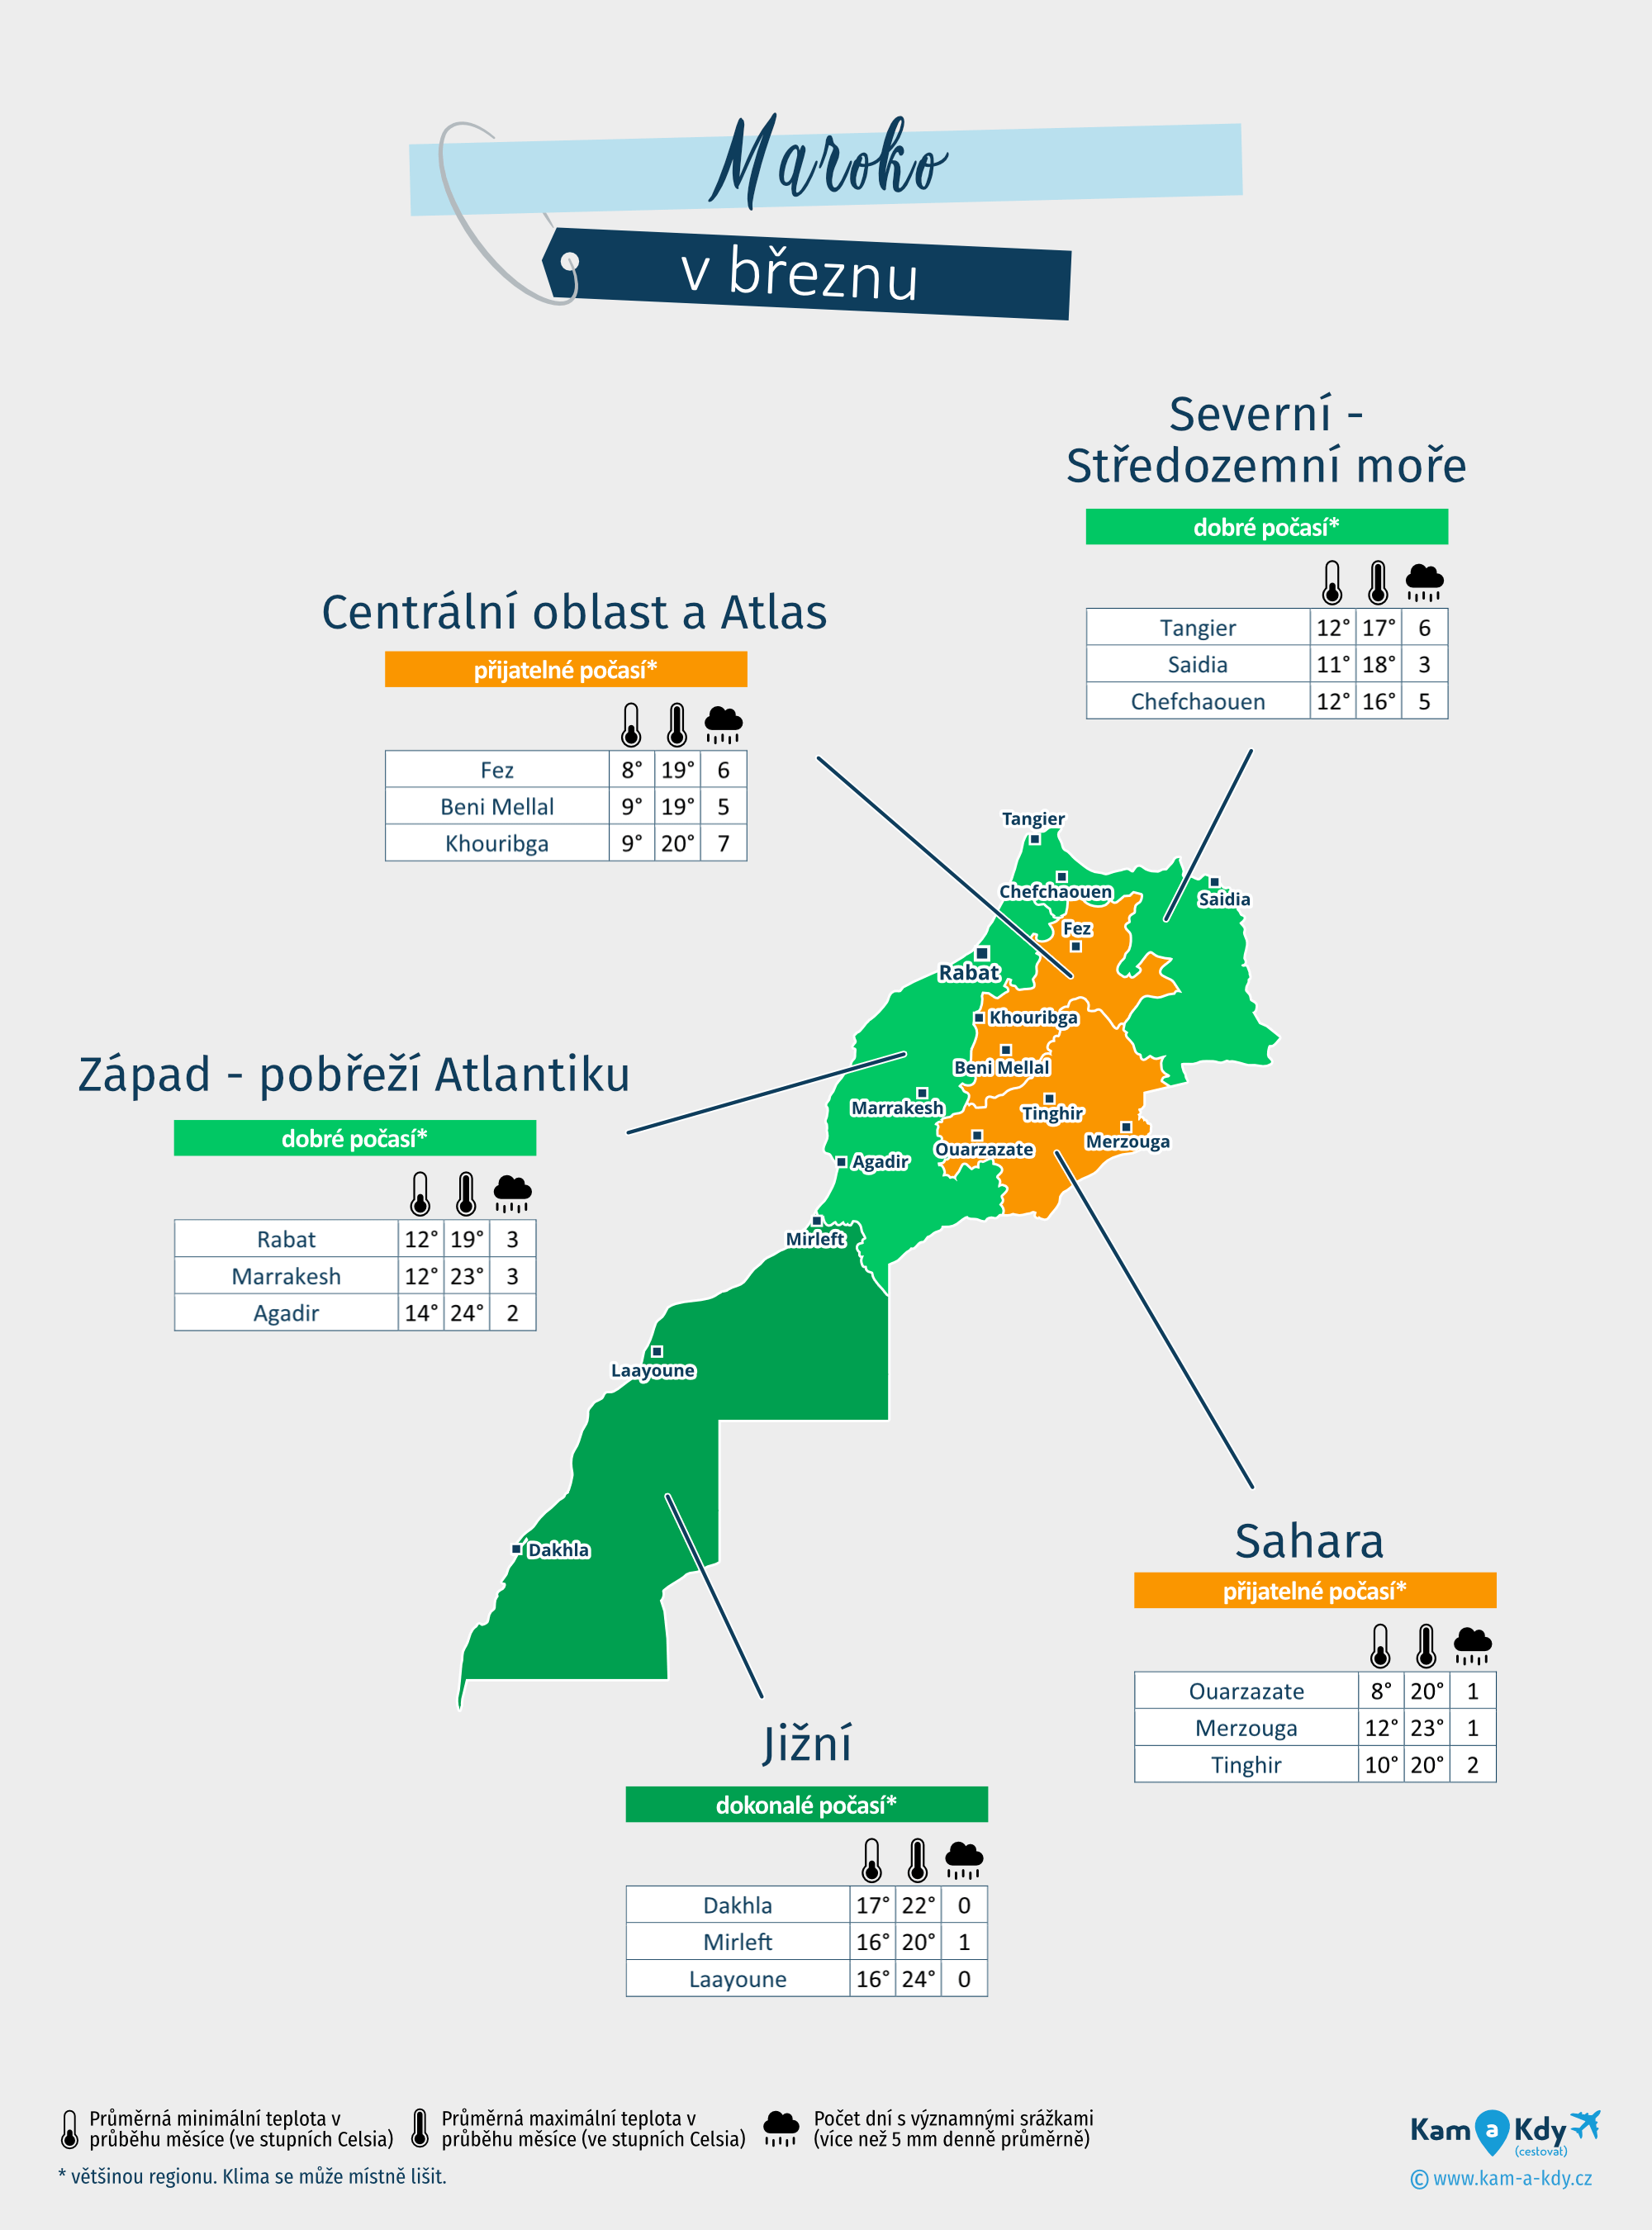 Maroko: mapa počasí v březnu v různých regionech